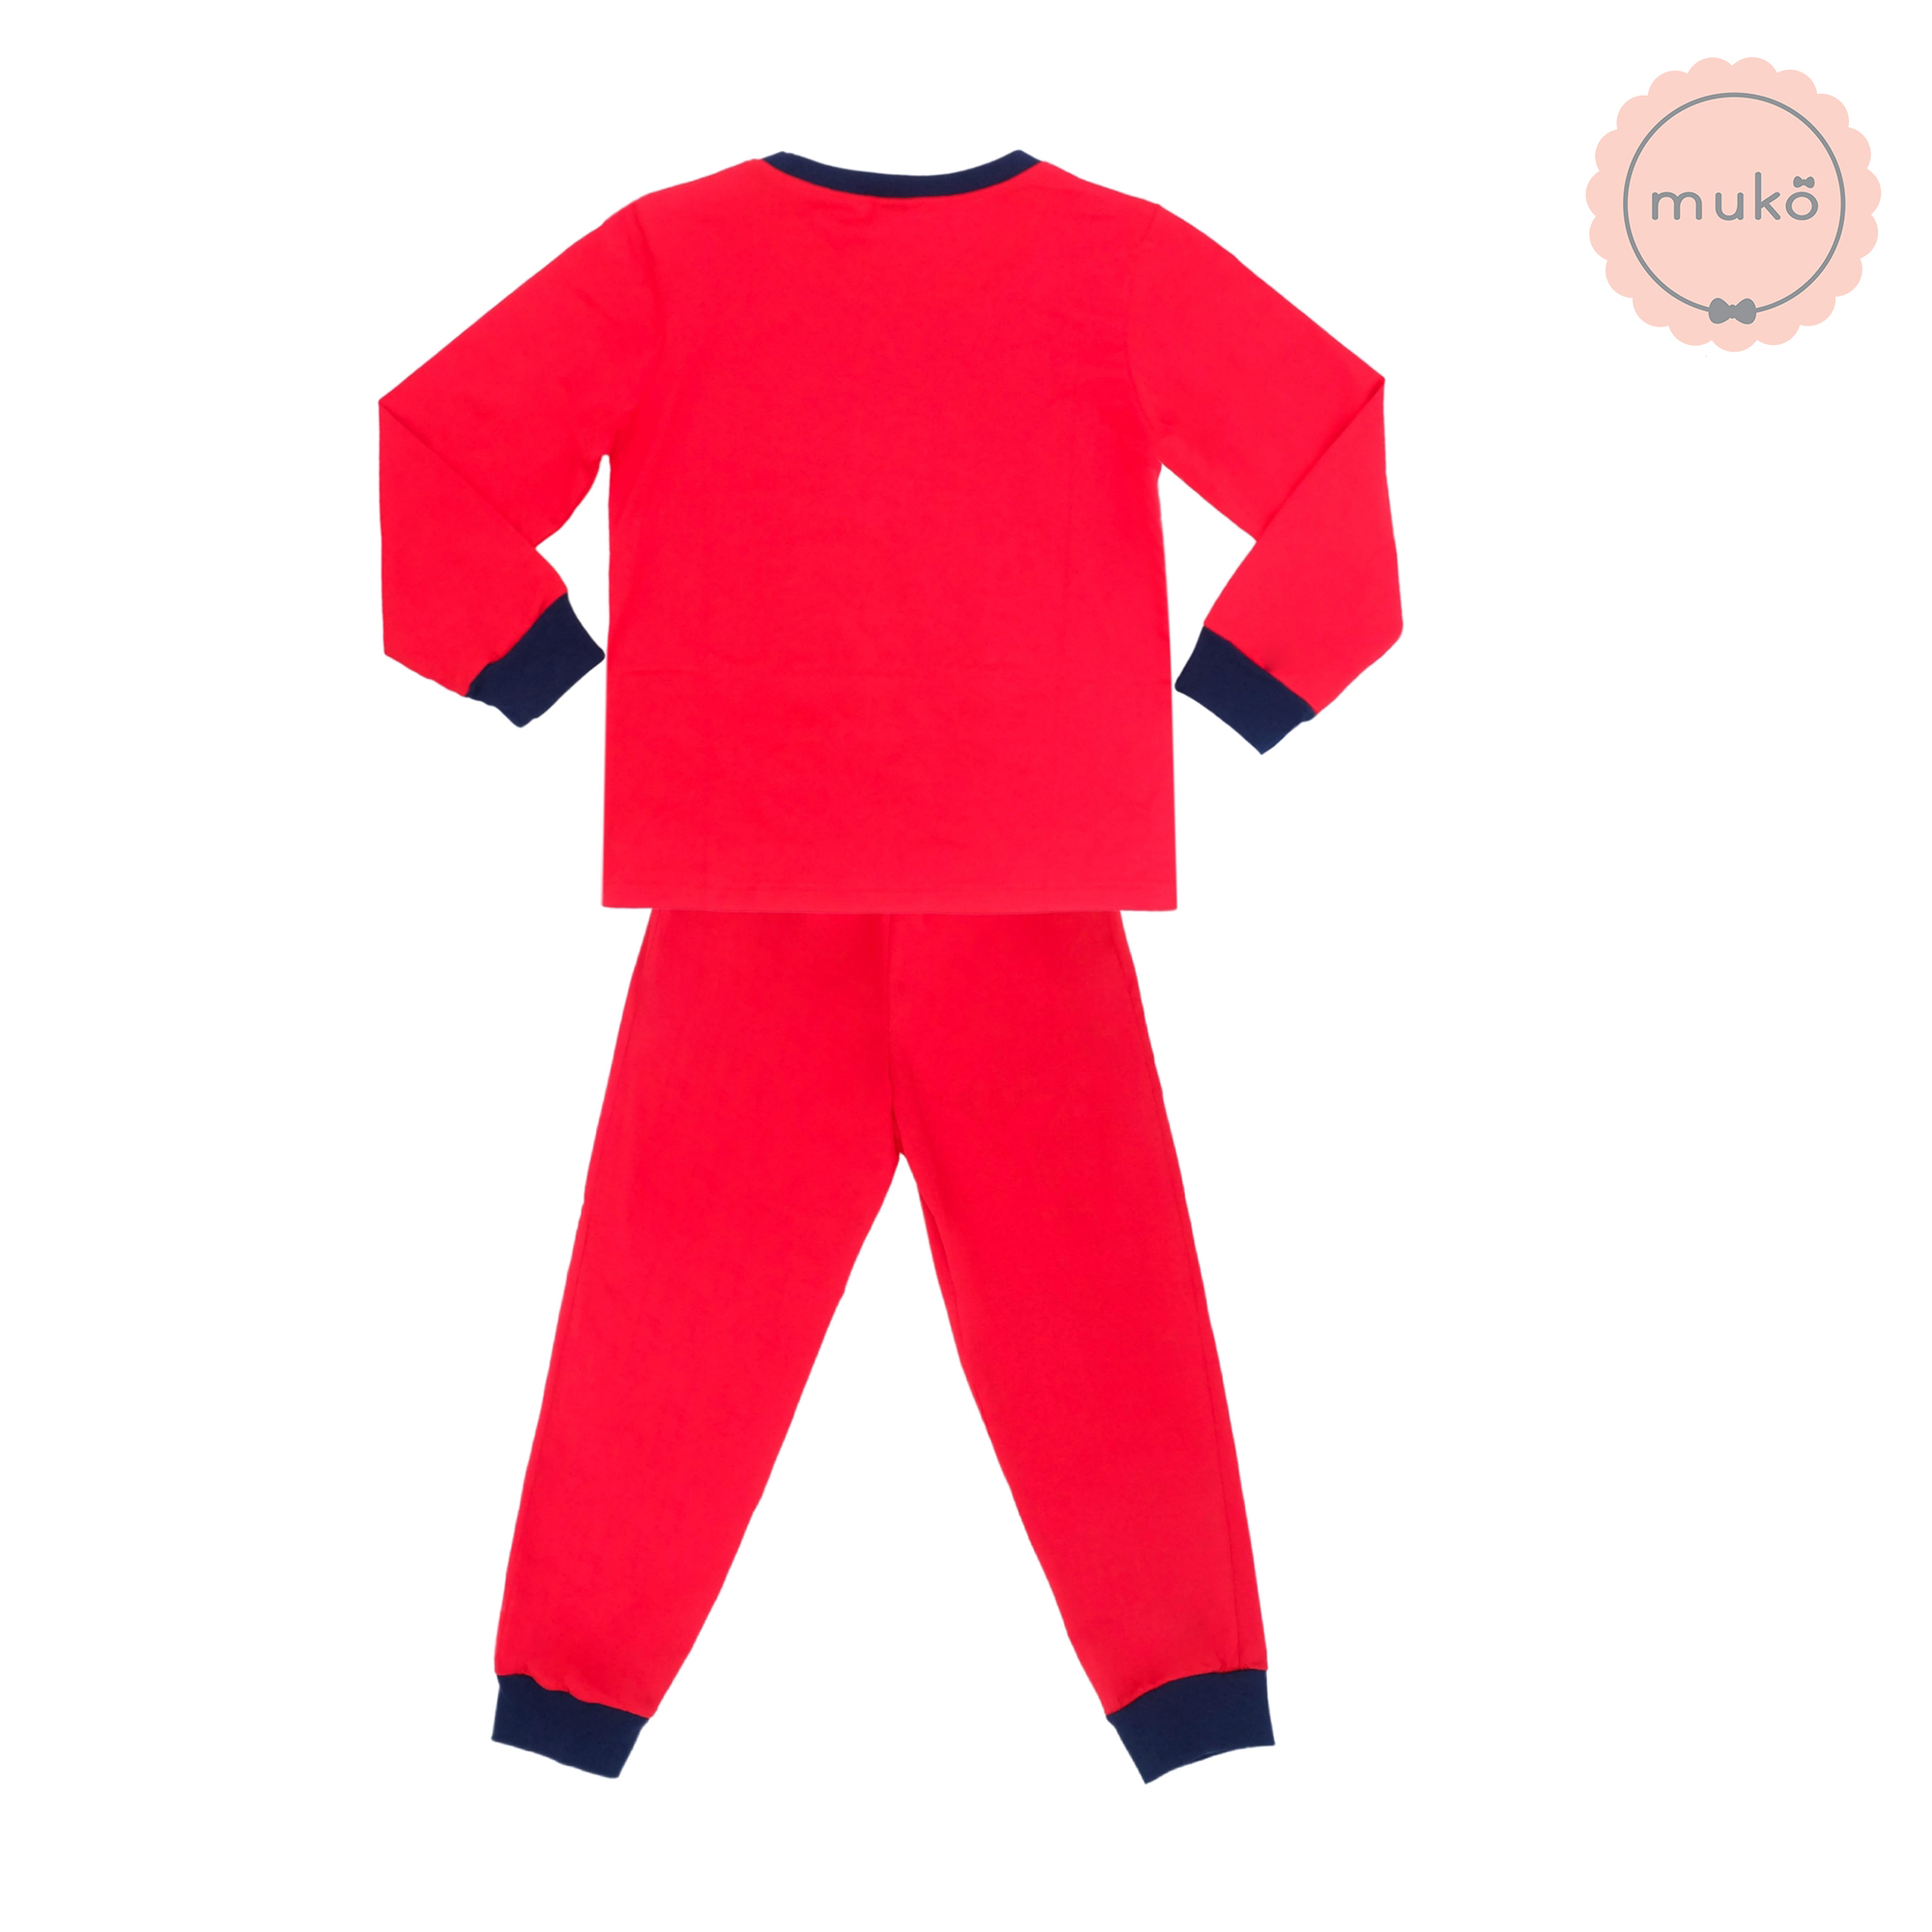 ชุดเด็ก 6-7 ขวบ แขนยาว-ขายาว (Size L) DLS127-690-XL-Red L ลาย สติช Stitch สีแดง (แดงทั้งชุด)